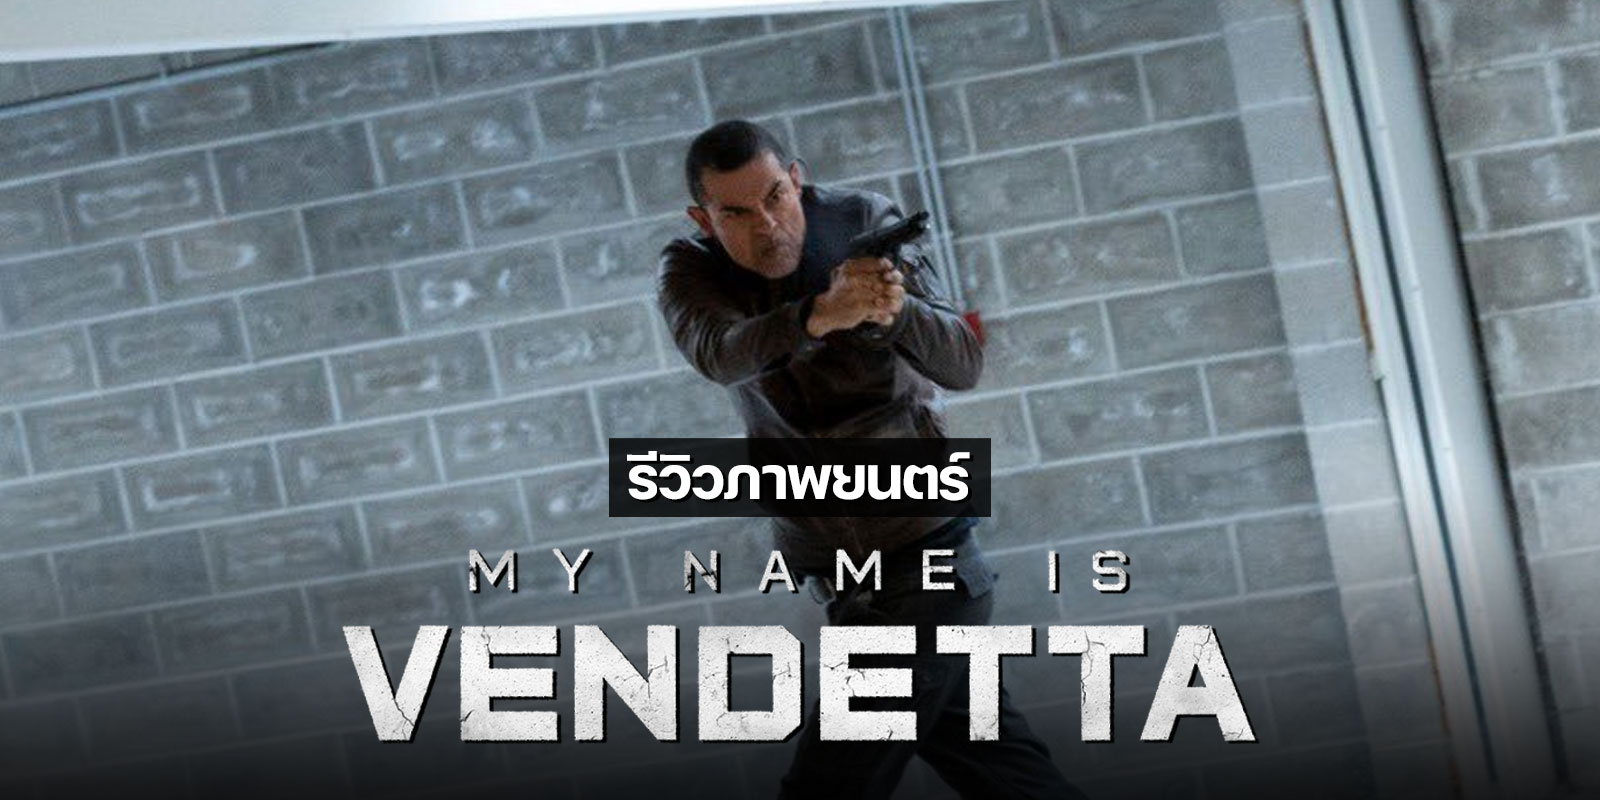 รีวิว My Name Is Vendetta (ในนามของความแค้น) หนังแอ็คชั่นดิบเถื่อนจากอิตาลีที่สนุกดูเพลินเอาเรื่อง ดูได้ทาง Netflix [มีพากย์ไทย]